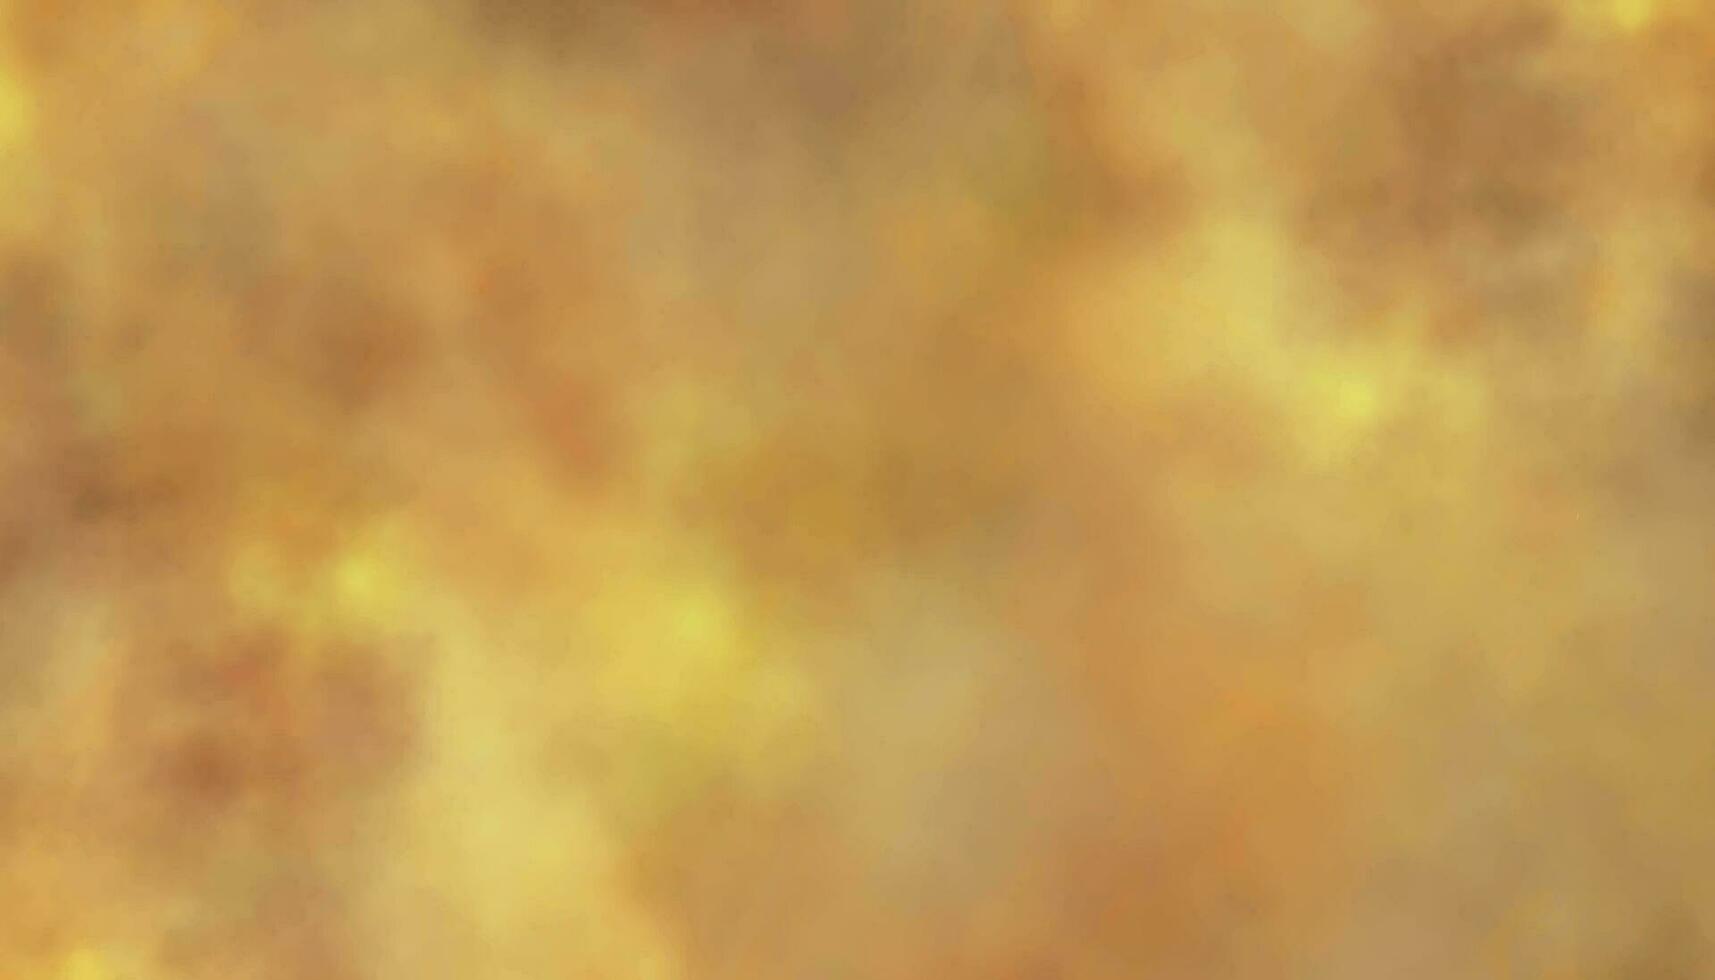 Feuer Hintergrund Textur. bunt Sonnenaufgang oder Sonnenuntergang Farben im wolkig Formen. betrübt Jahrgang Grunge und Aquarell malen. abstrakt Orange Hintergrund vektor